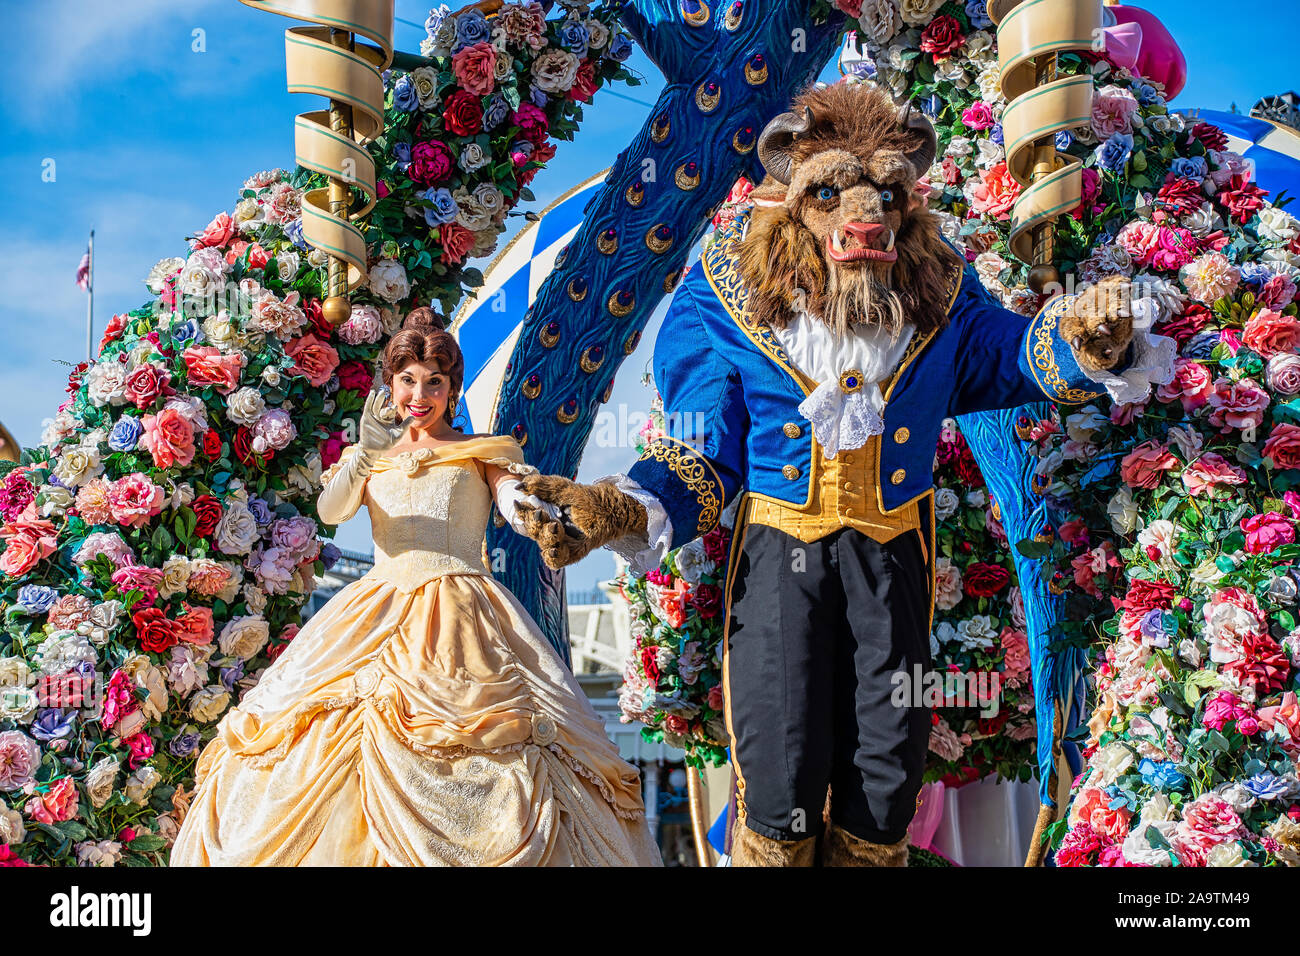 Belle et bête dans le festival de fantasy parade au Magic Kingdom Banque D'Images